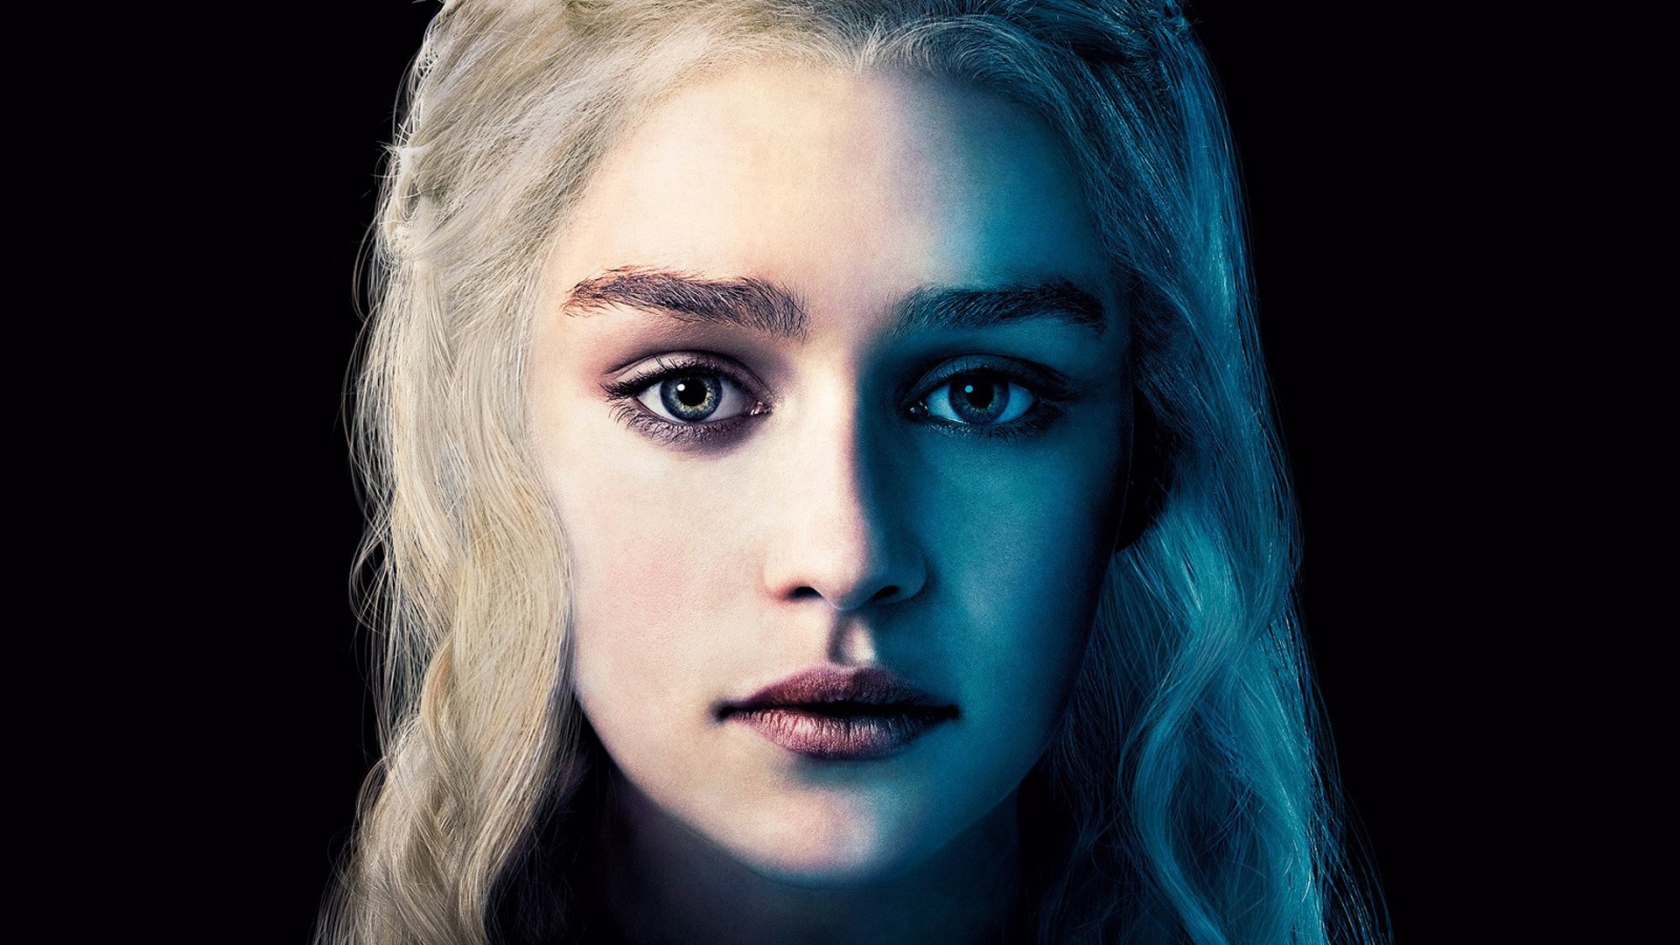 Daenerys Targaryen for 1680 x 945 HDTV resolution